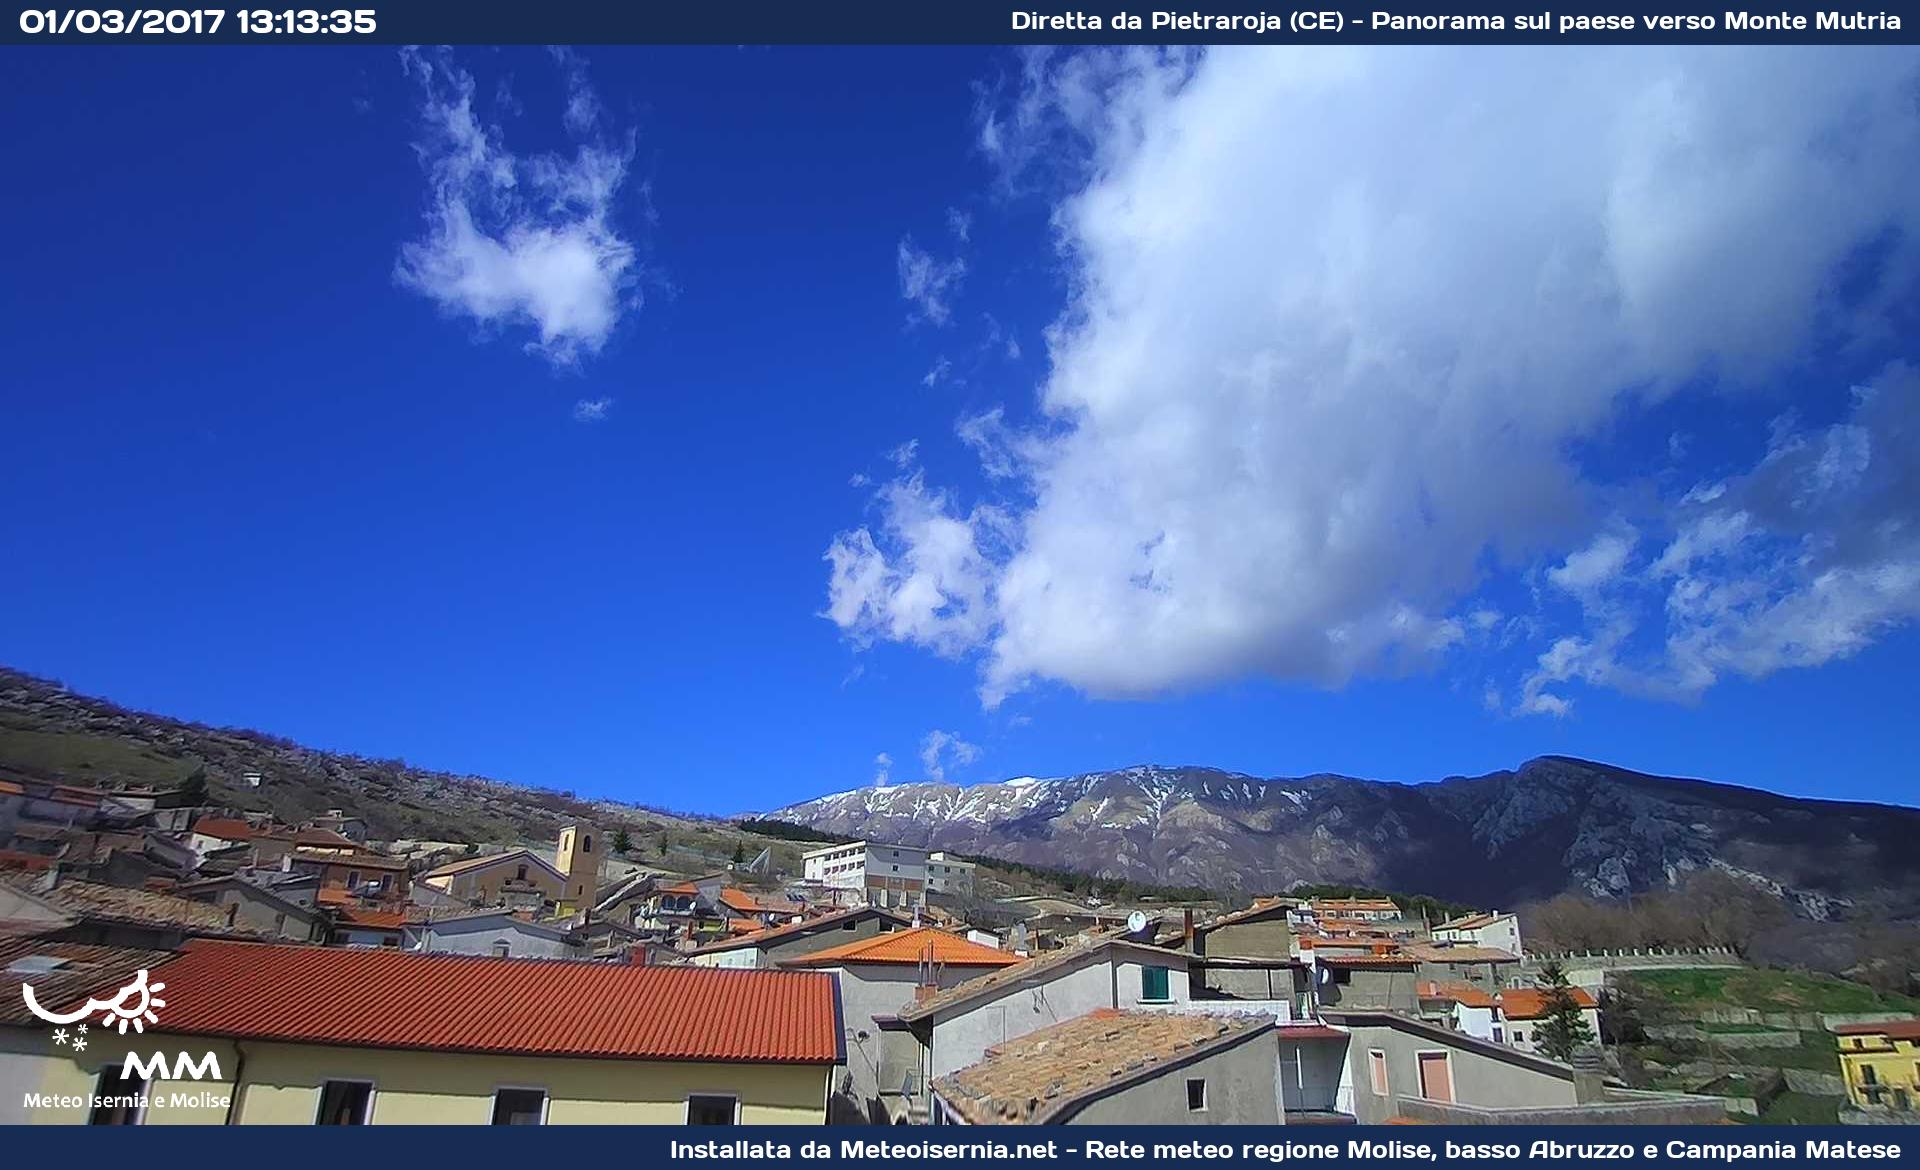 Webcam di Pietraroja Panorama verso Monte Mutria